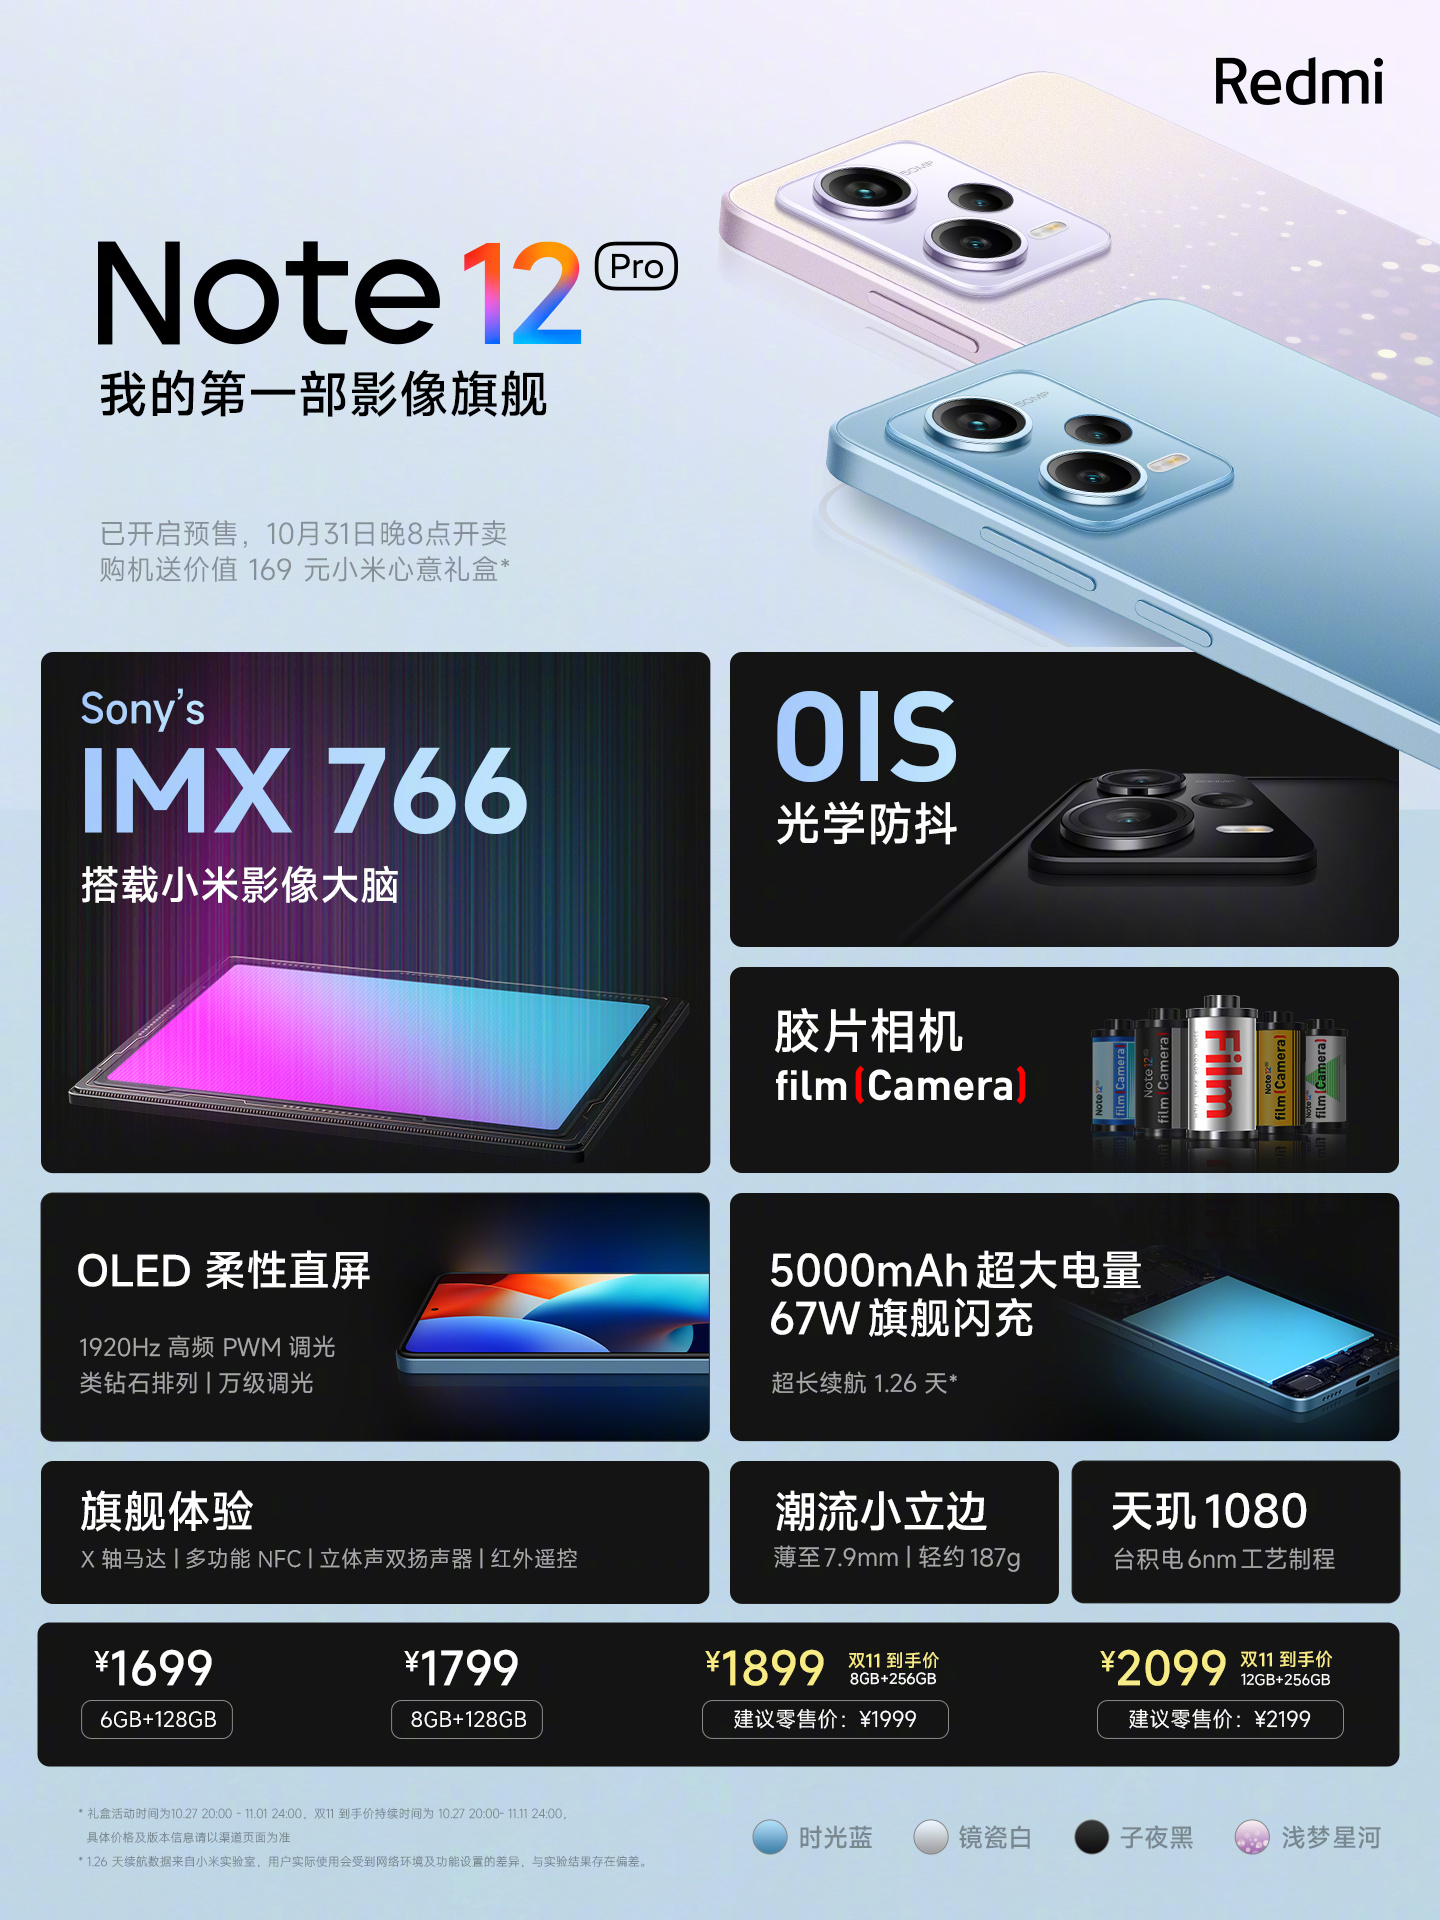 Redmi Note 12 Pro specs